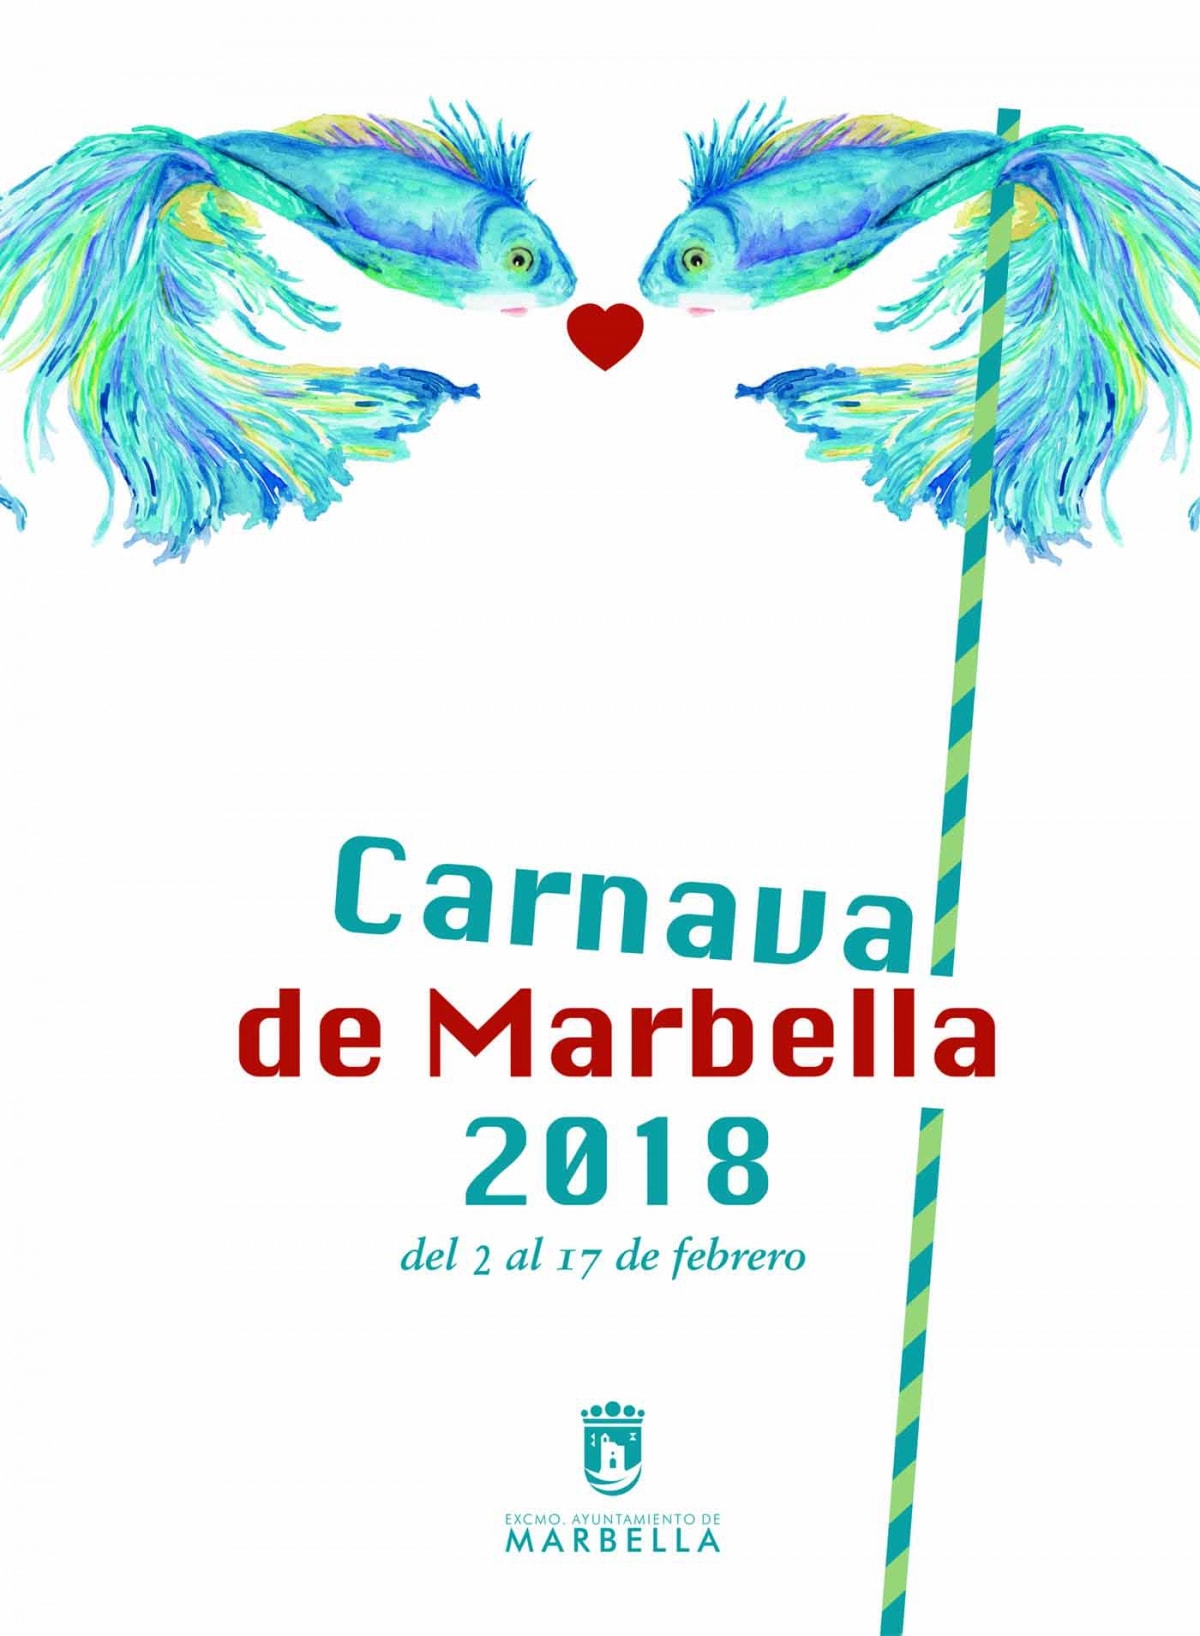 El Carnaval de Marbella contará con una treintena de actividades en todos los distritos y se desarrollará del 2 al 17 de febrero